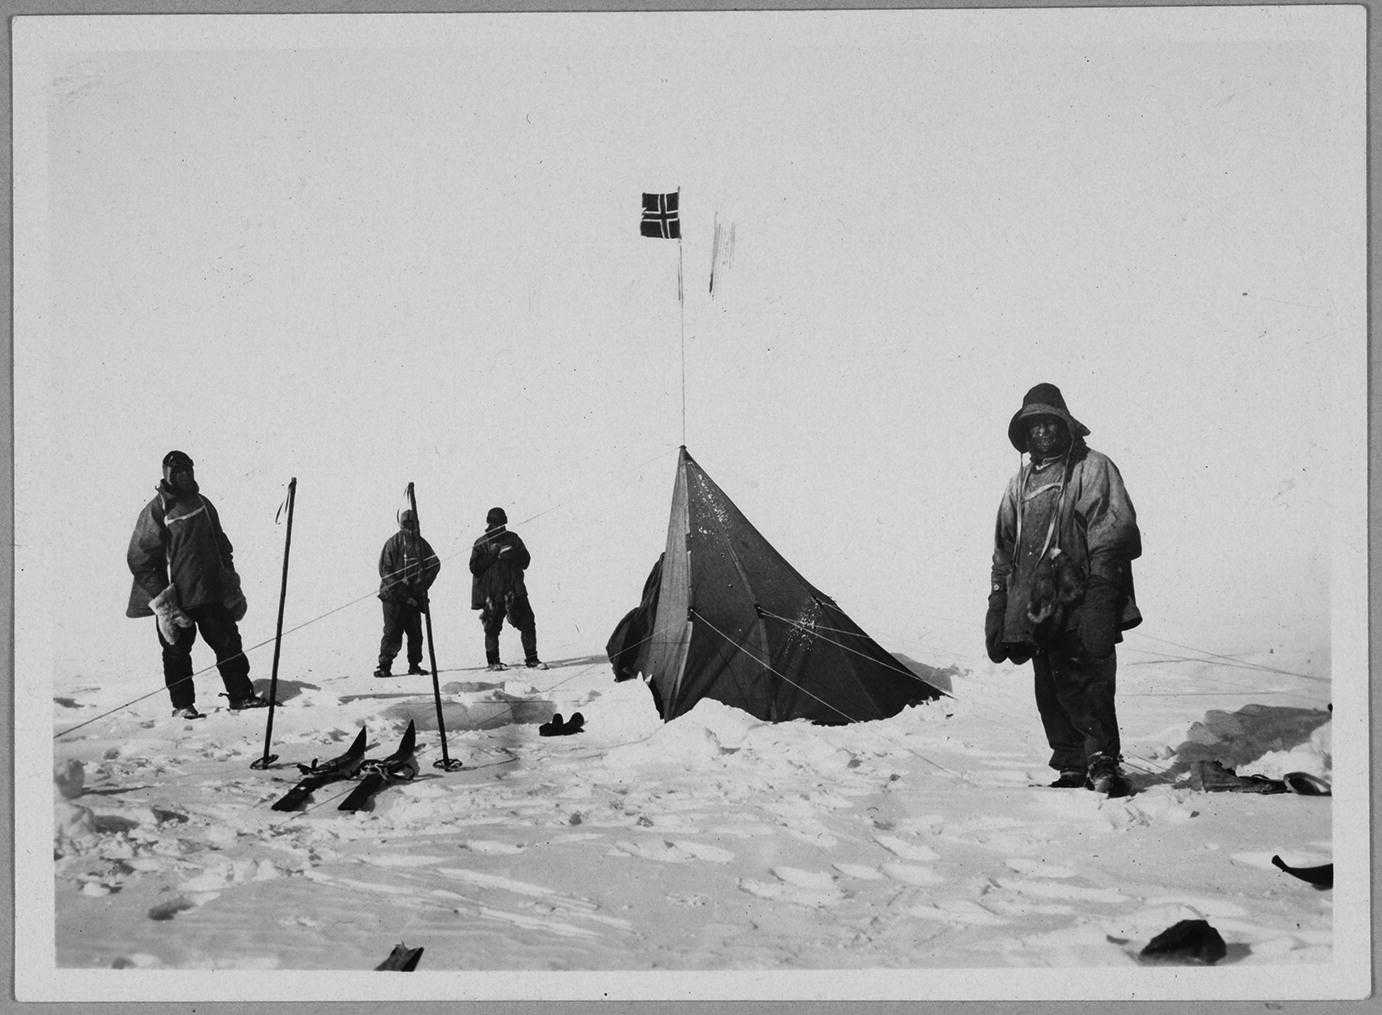 Руководитель первой экспедиции покорившей южный полюс. Экспедиция Руаля Амундсена. Амундсен 1911. Руаль Амундсен достиг Южного полюса.